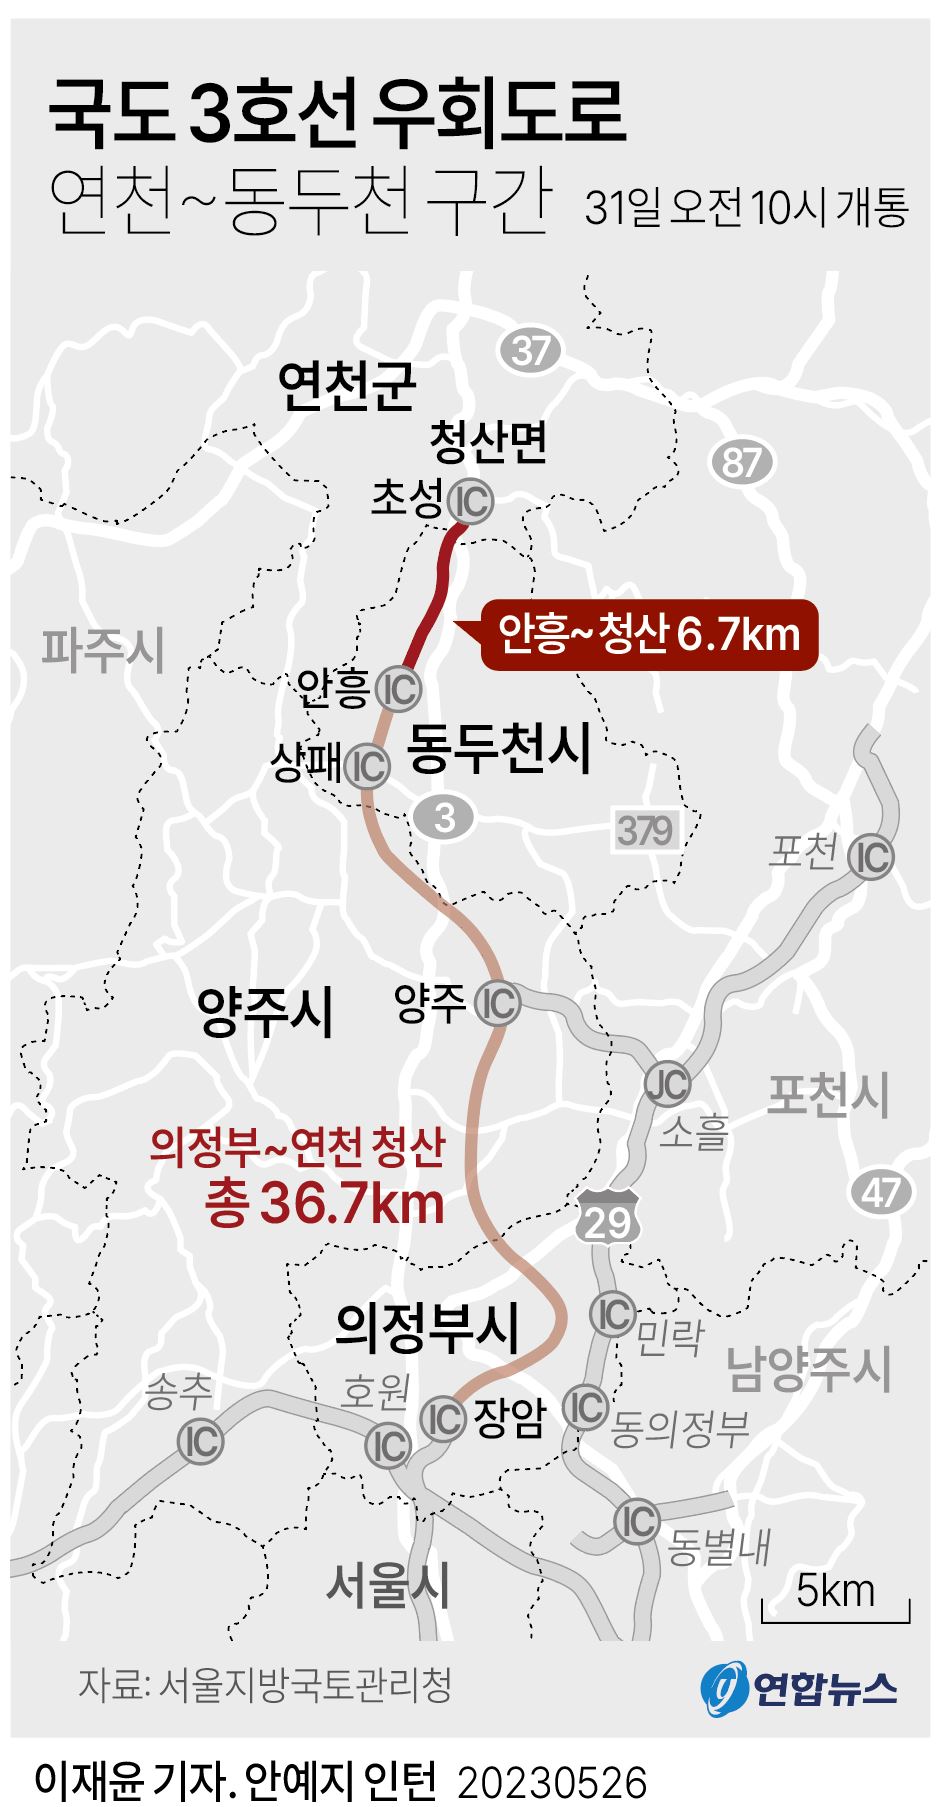 [그래픽] 국도 3호선 우회도로 연천~동두천 구간